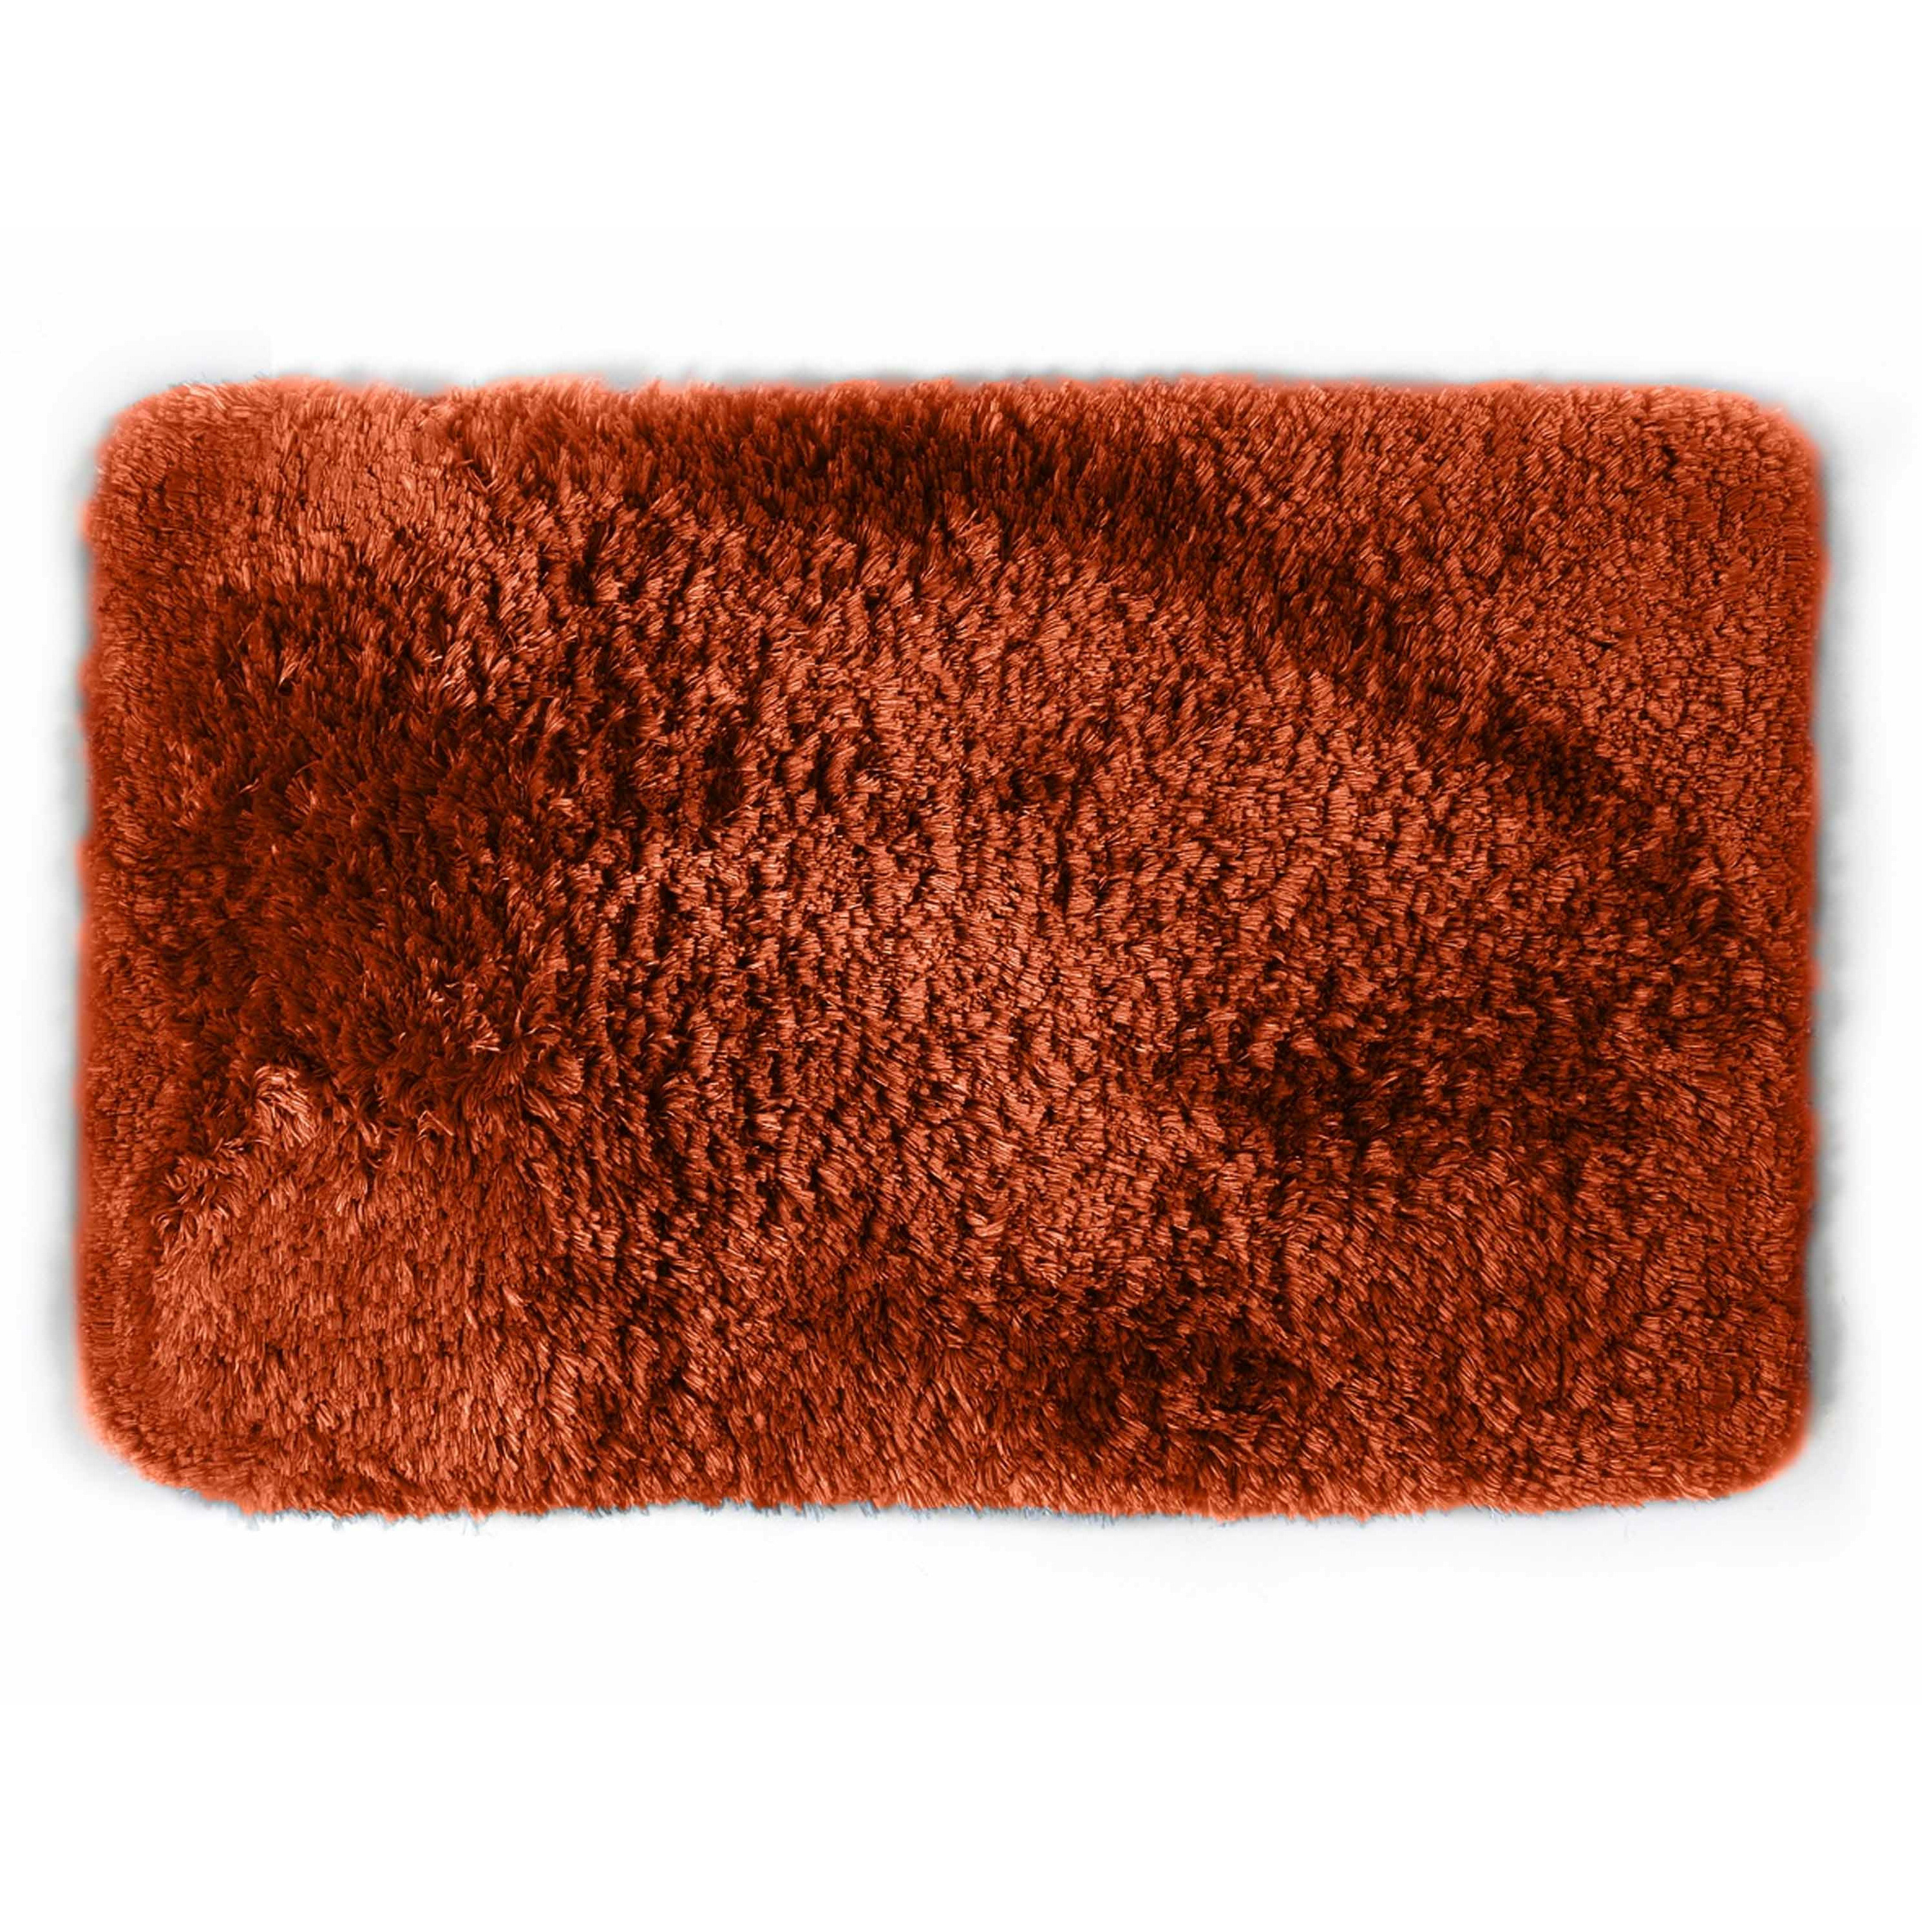 Spirella badkamer vloer kleedje-badmat tapijt hoogpolig luxe uitvoering terracotta 40 x 60 cm